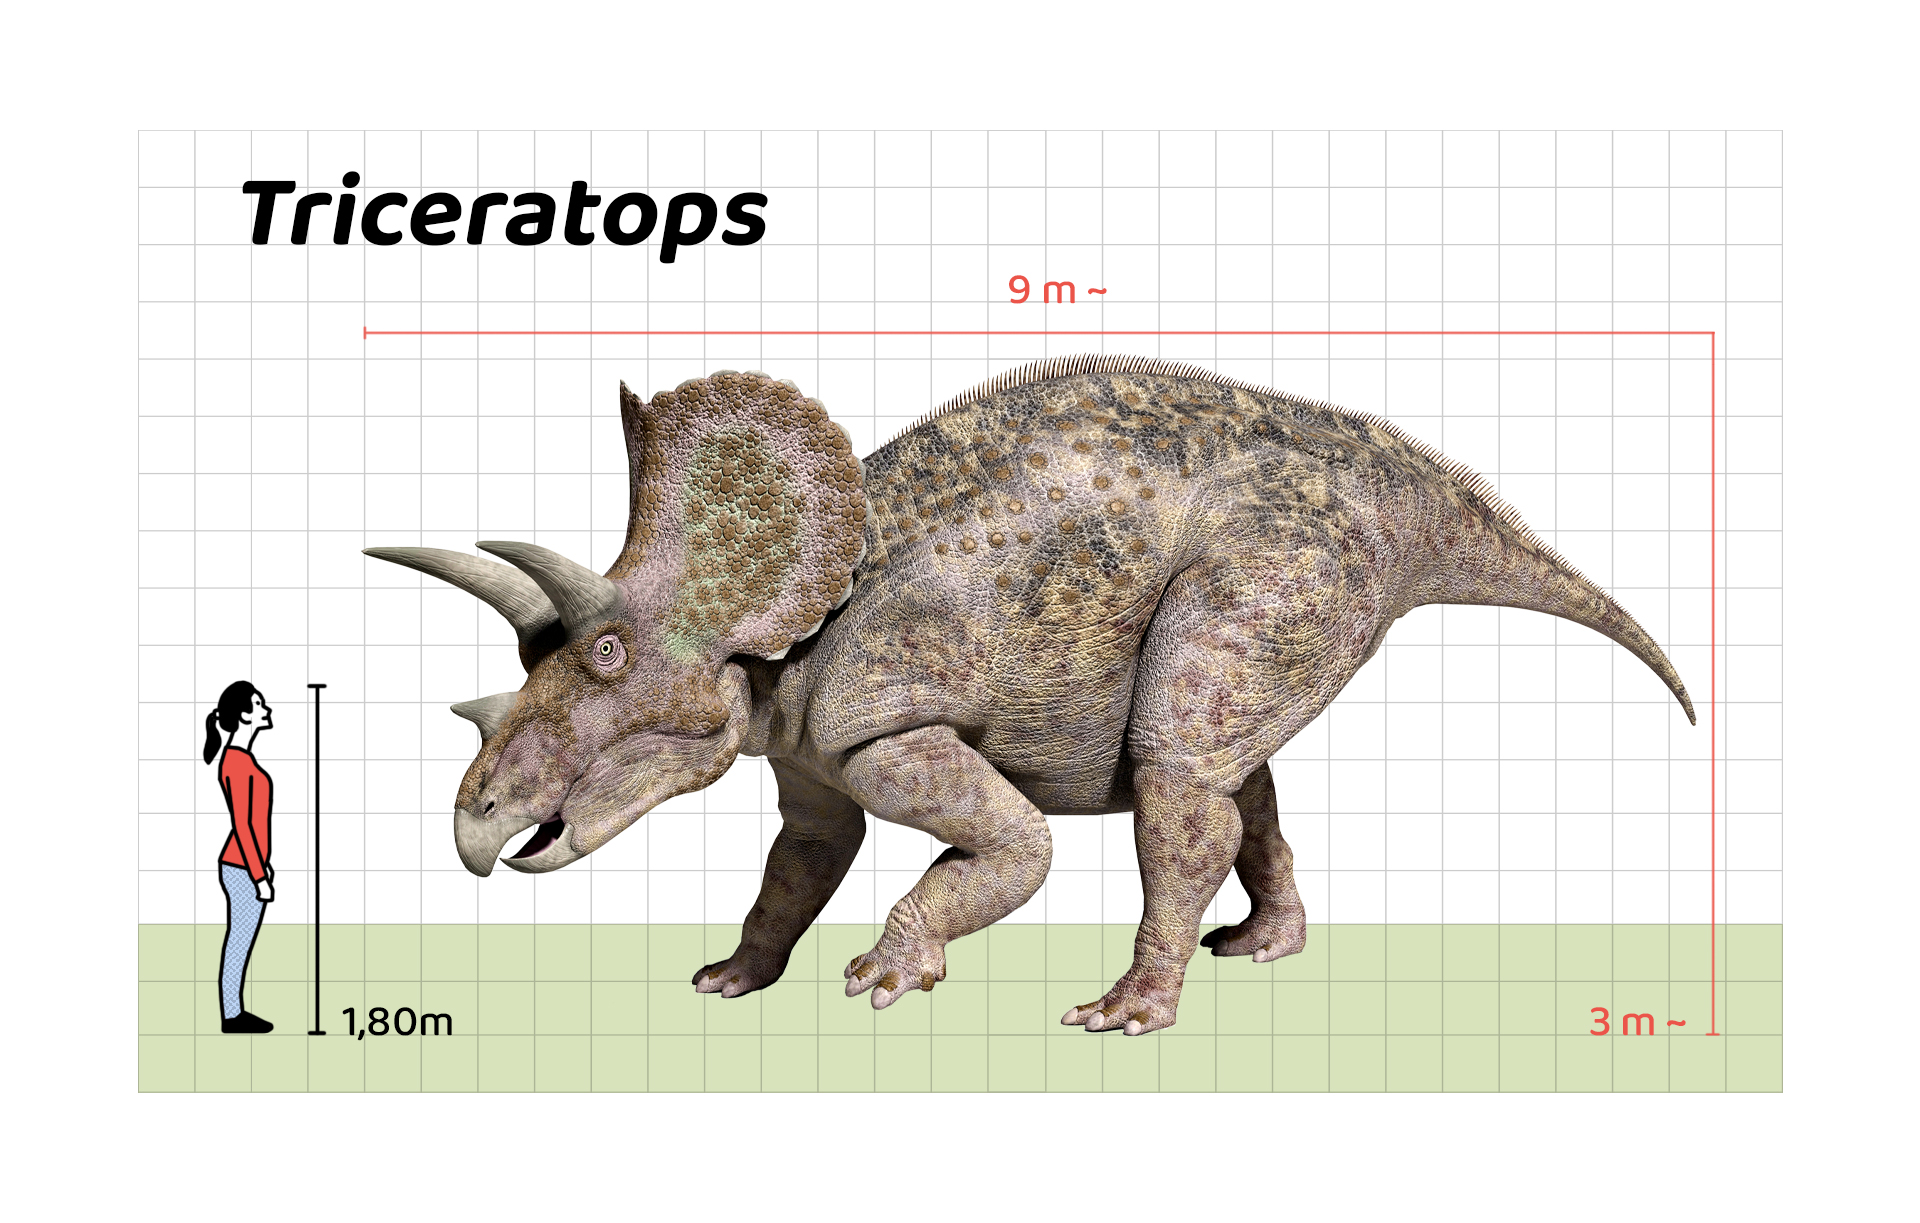 İnsan boyu ile Triceratops’un büyüklüğünün karşılaştırılması